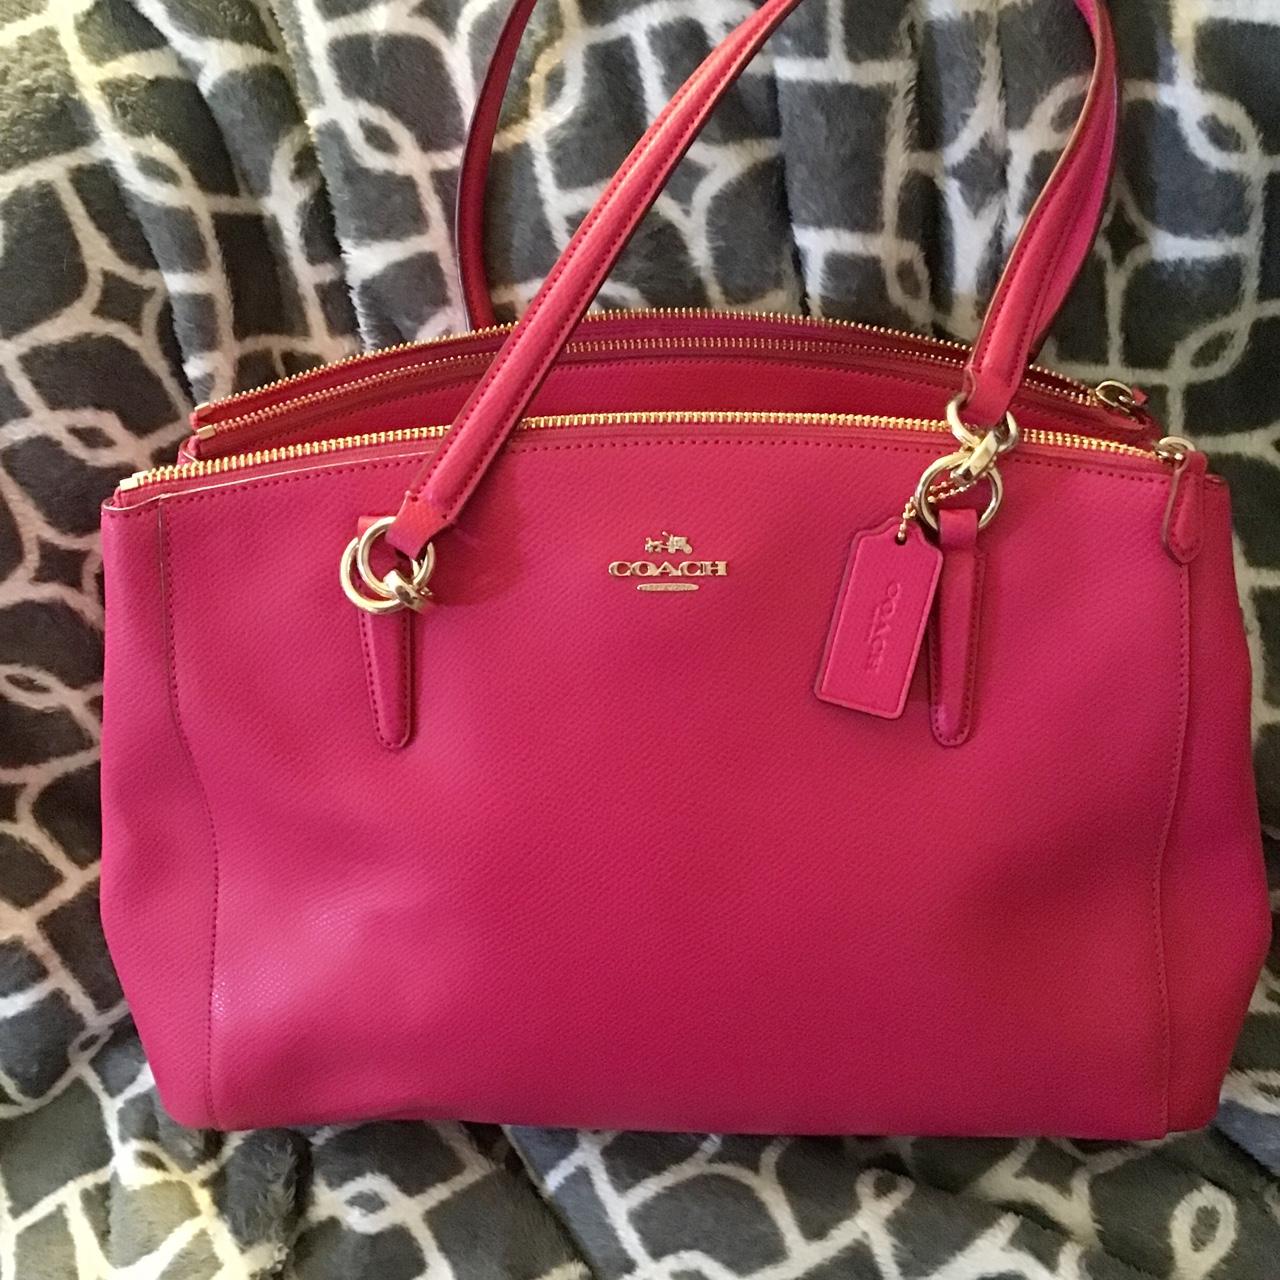 Coach Hot Pink Morgan Satchel Handbag | Satchel handbags, Satchel, Handbag